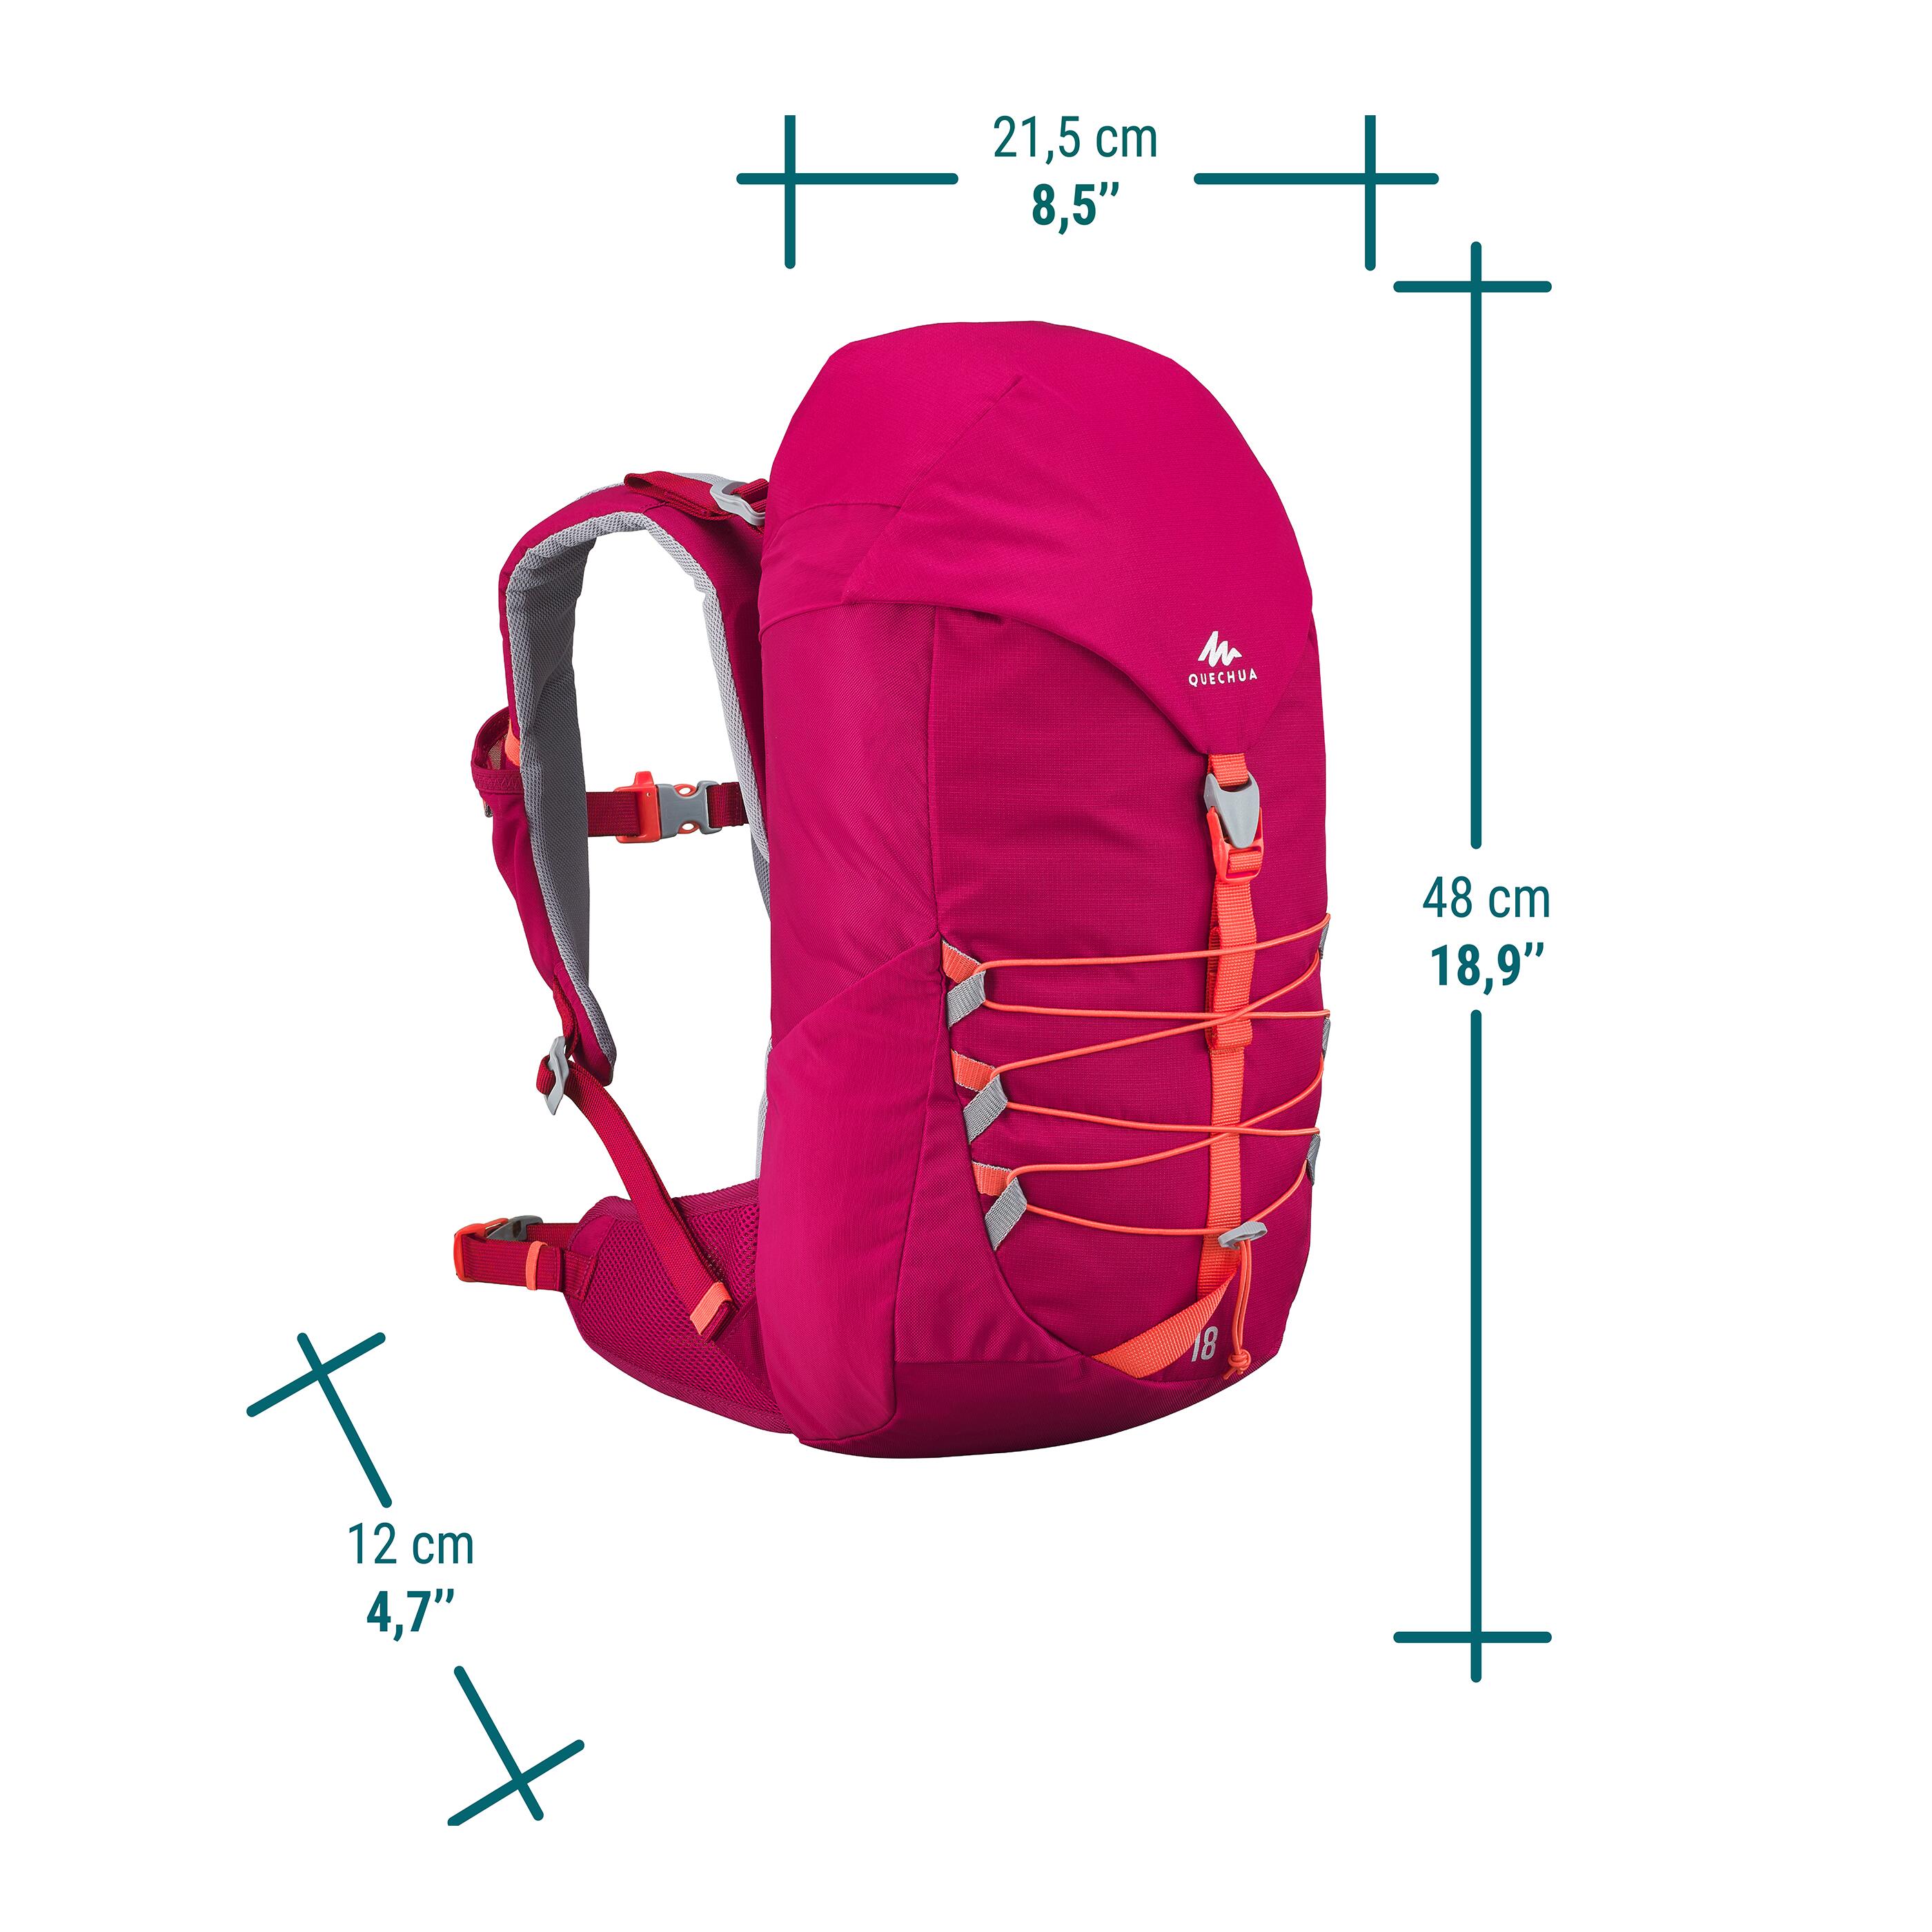 Kids' hiking backpack 18L - MH500 2/11